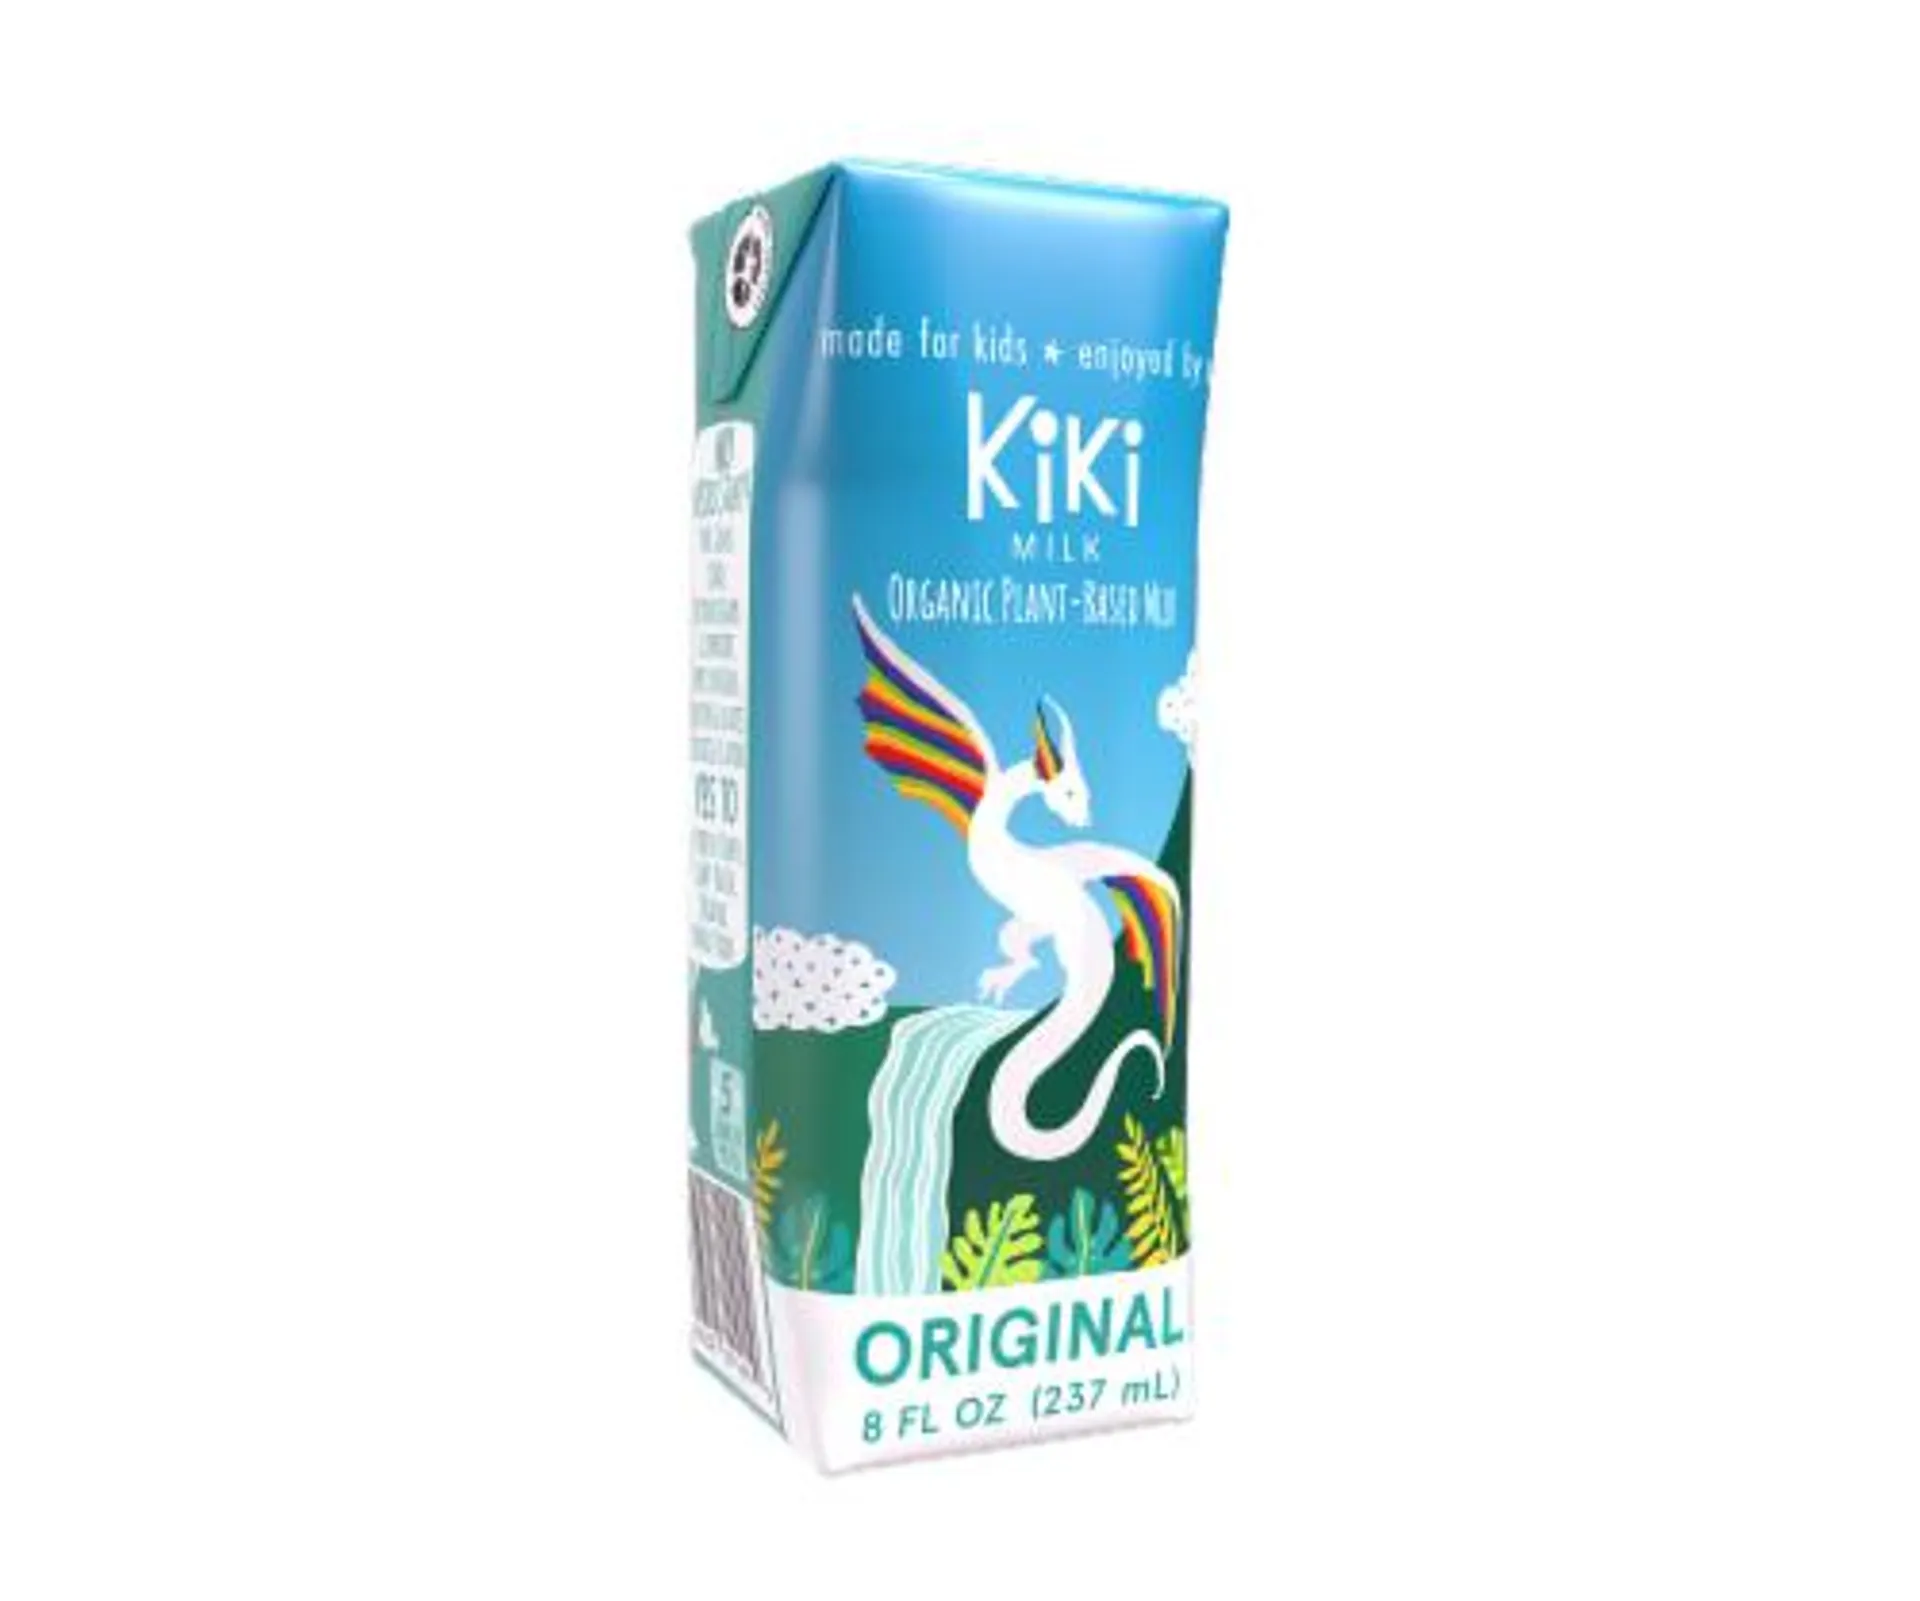 Kiki Milk - Original Kiki Milk - 8 fl oz - Pack of 12